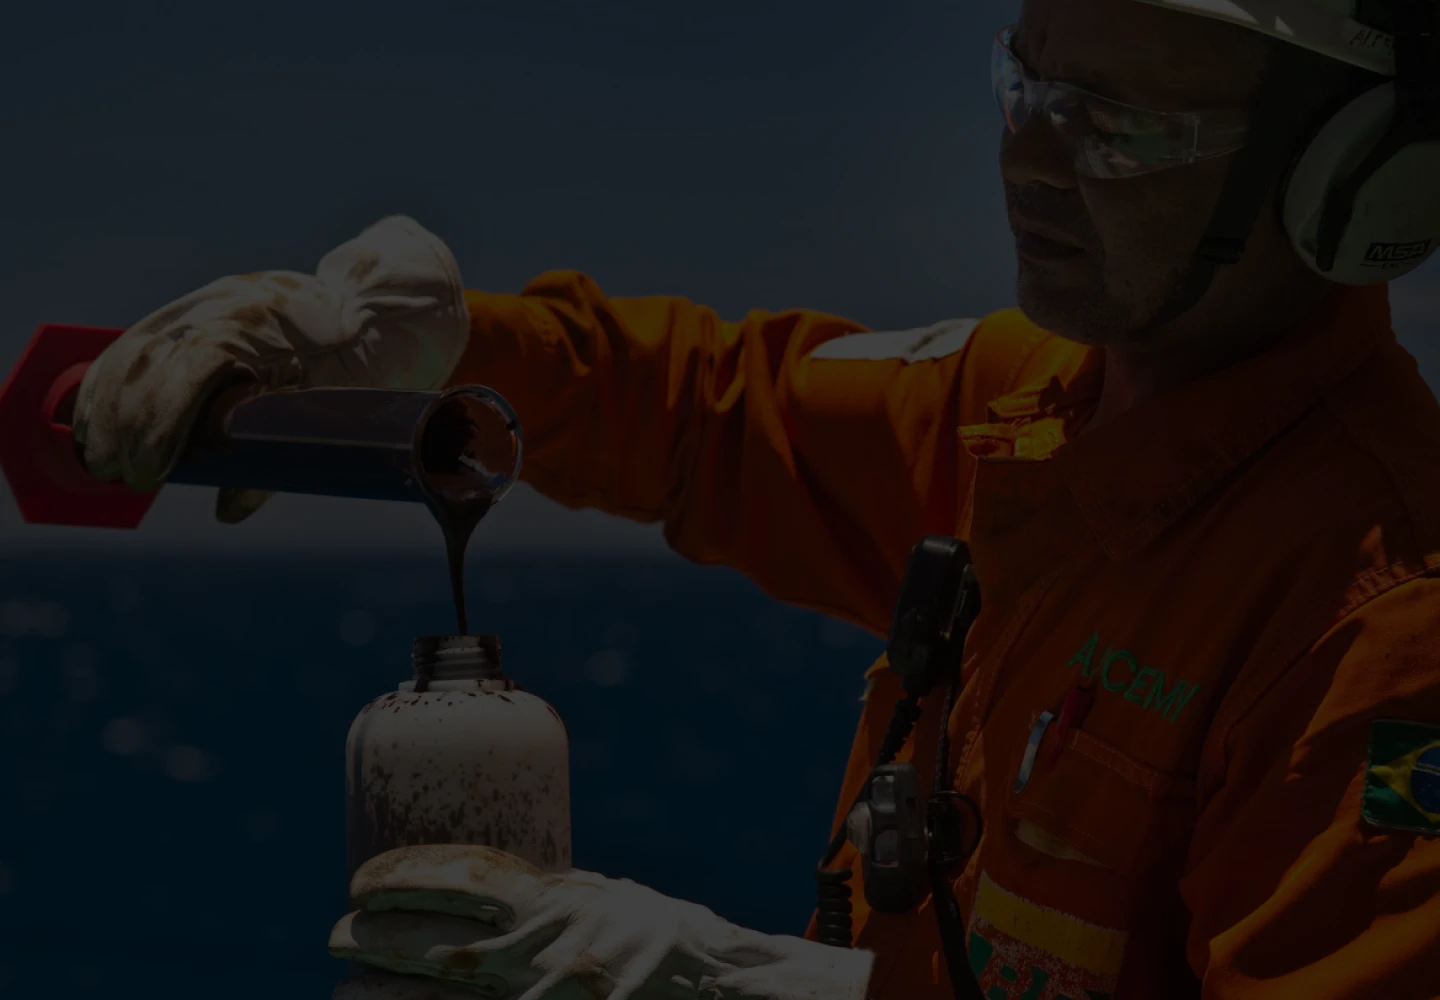 Fotografia de funcionário da Petrobras despejando petróleo em uma garrafa de metal.